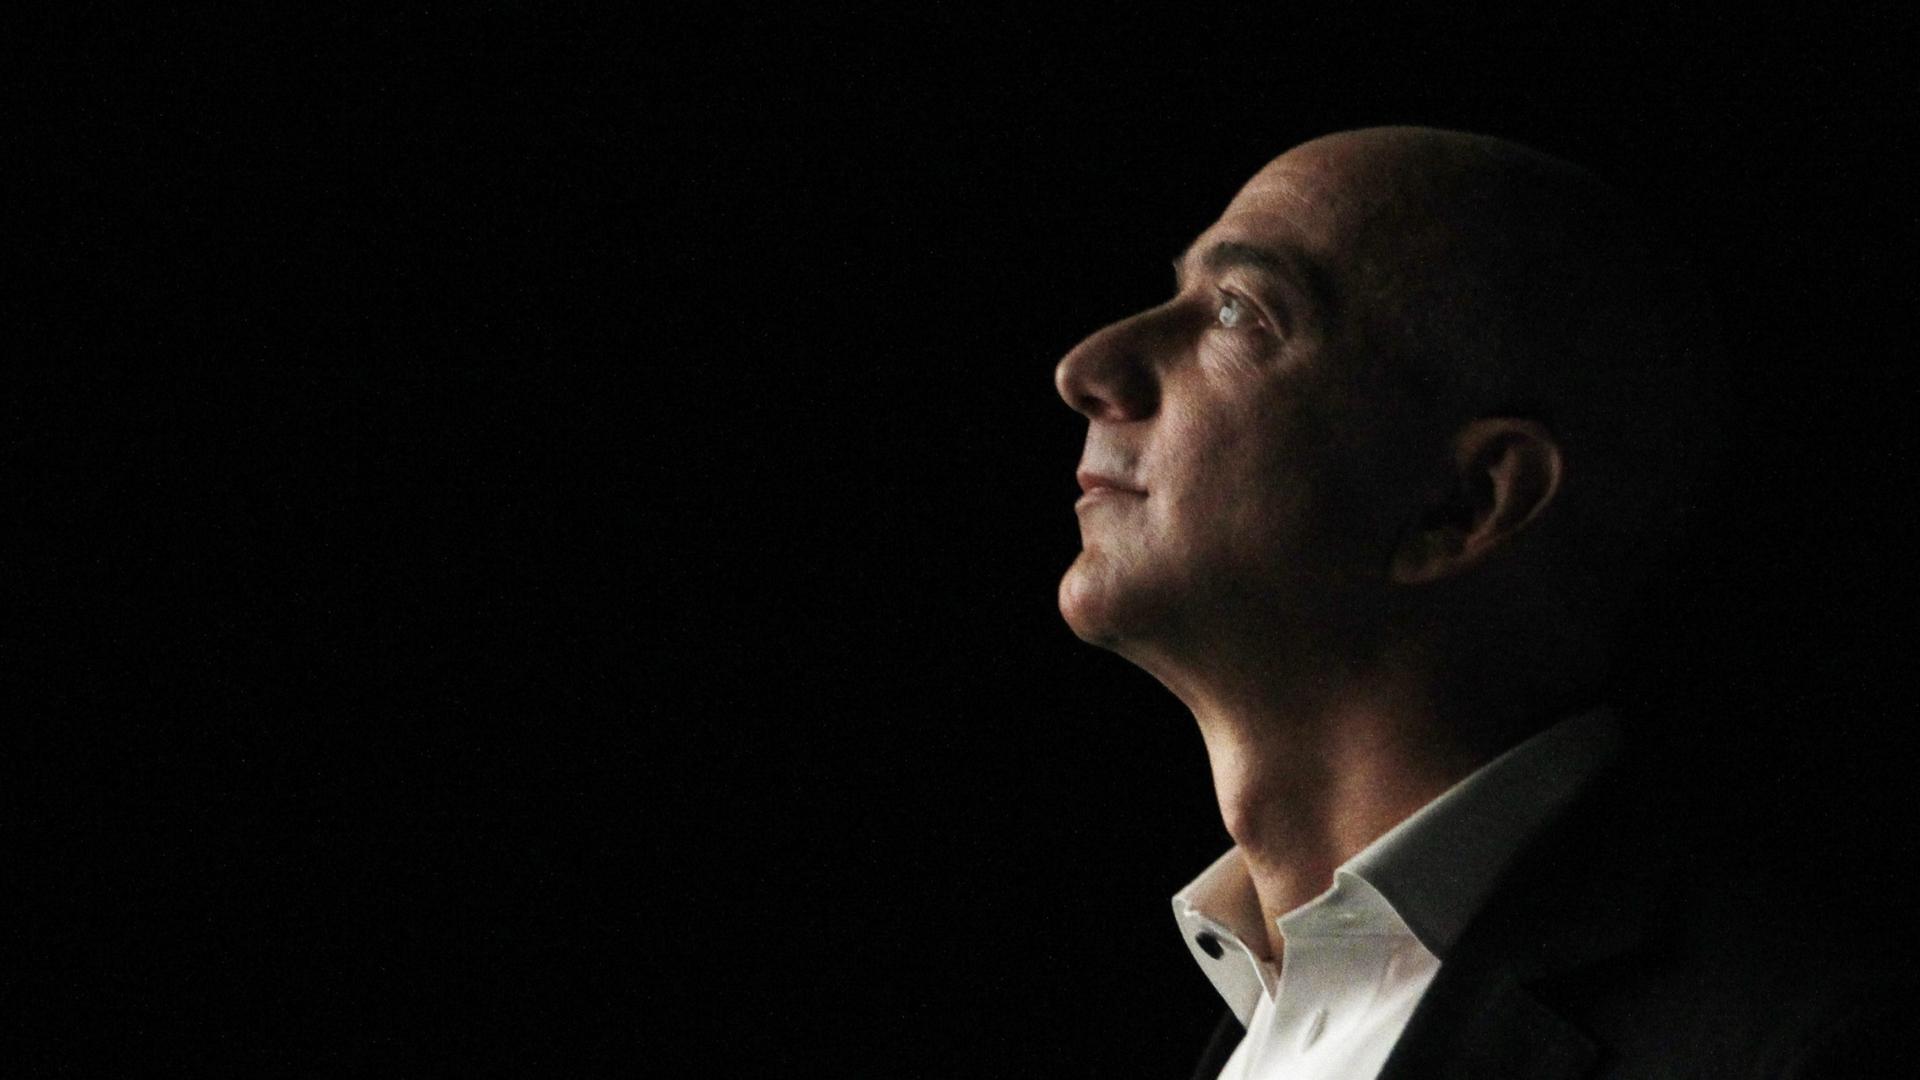 Jeff Bezos in profile